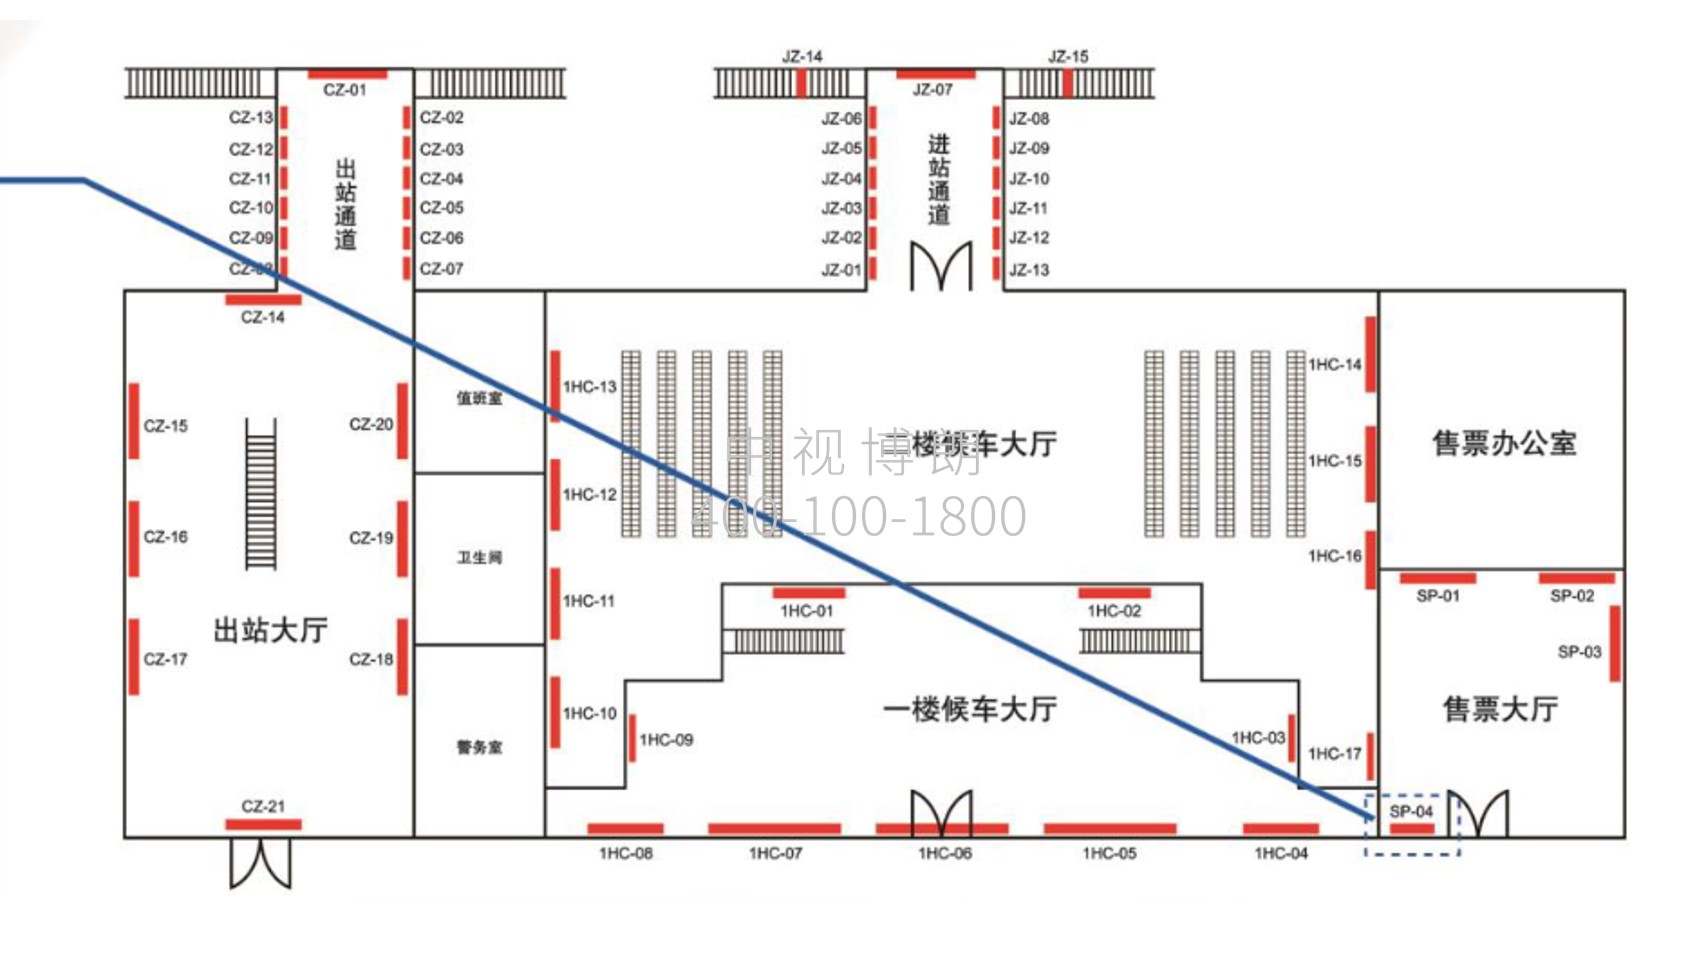 晋江站-售票厅左侧灯箱点位图